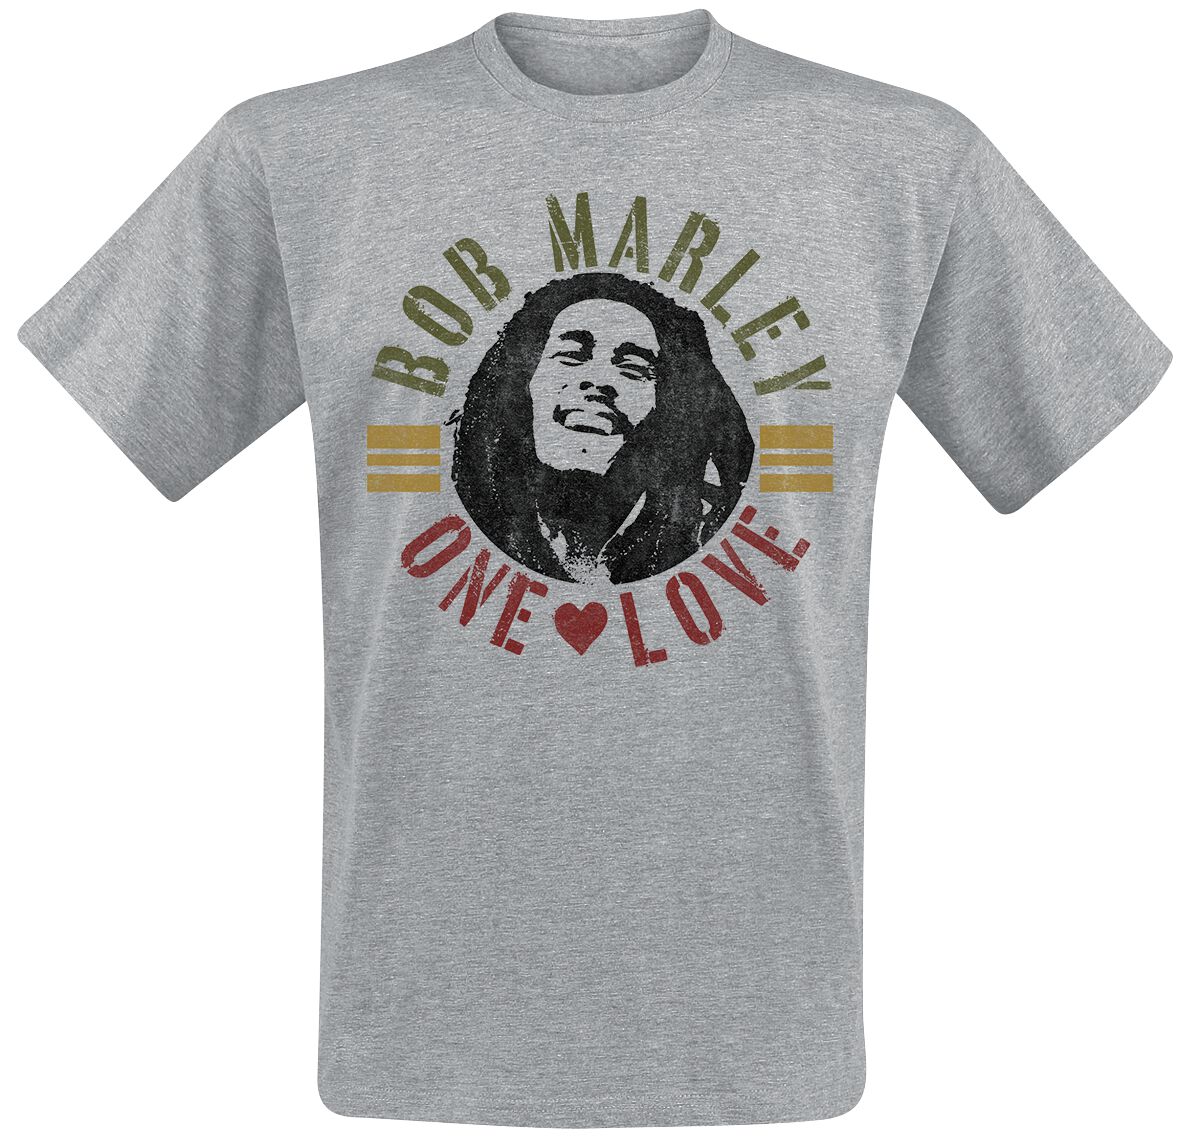 Bob Marley T-Shirt - One Love Vintage - 3XL - für Männer - Größe 3XL - grau meliert  - Lizenziertes Merchandise!